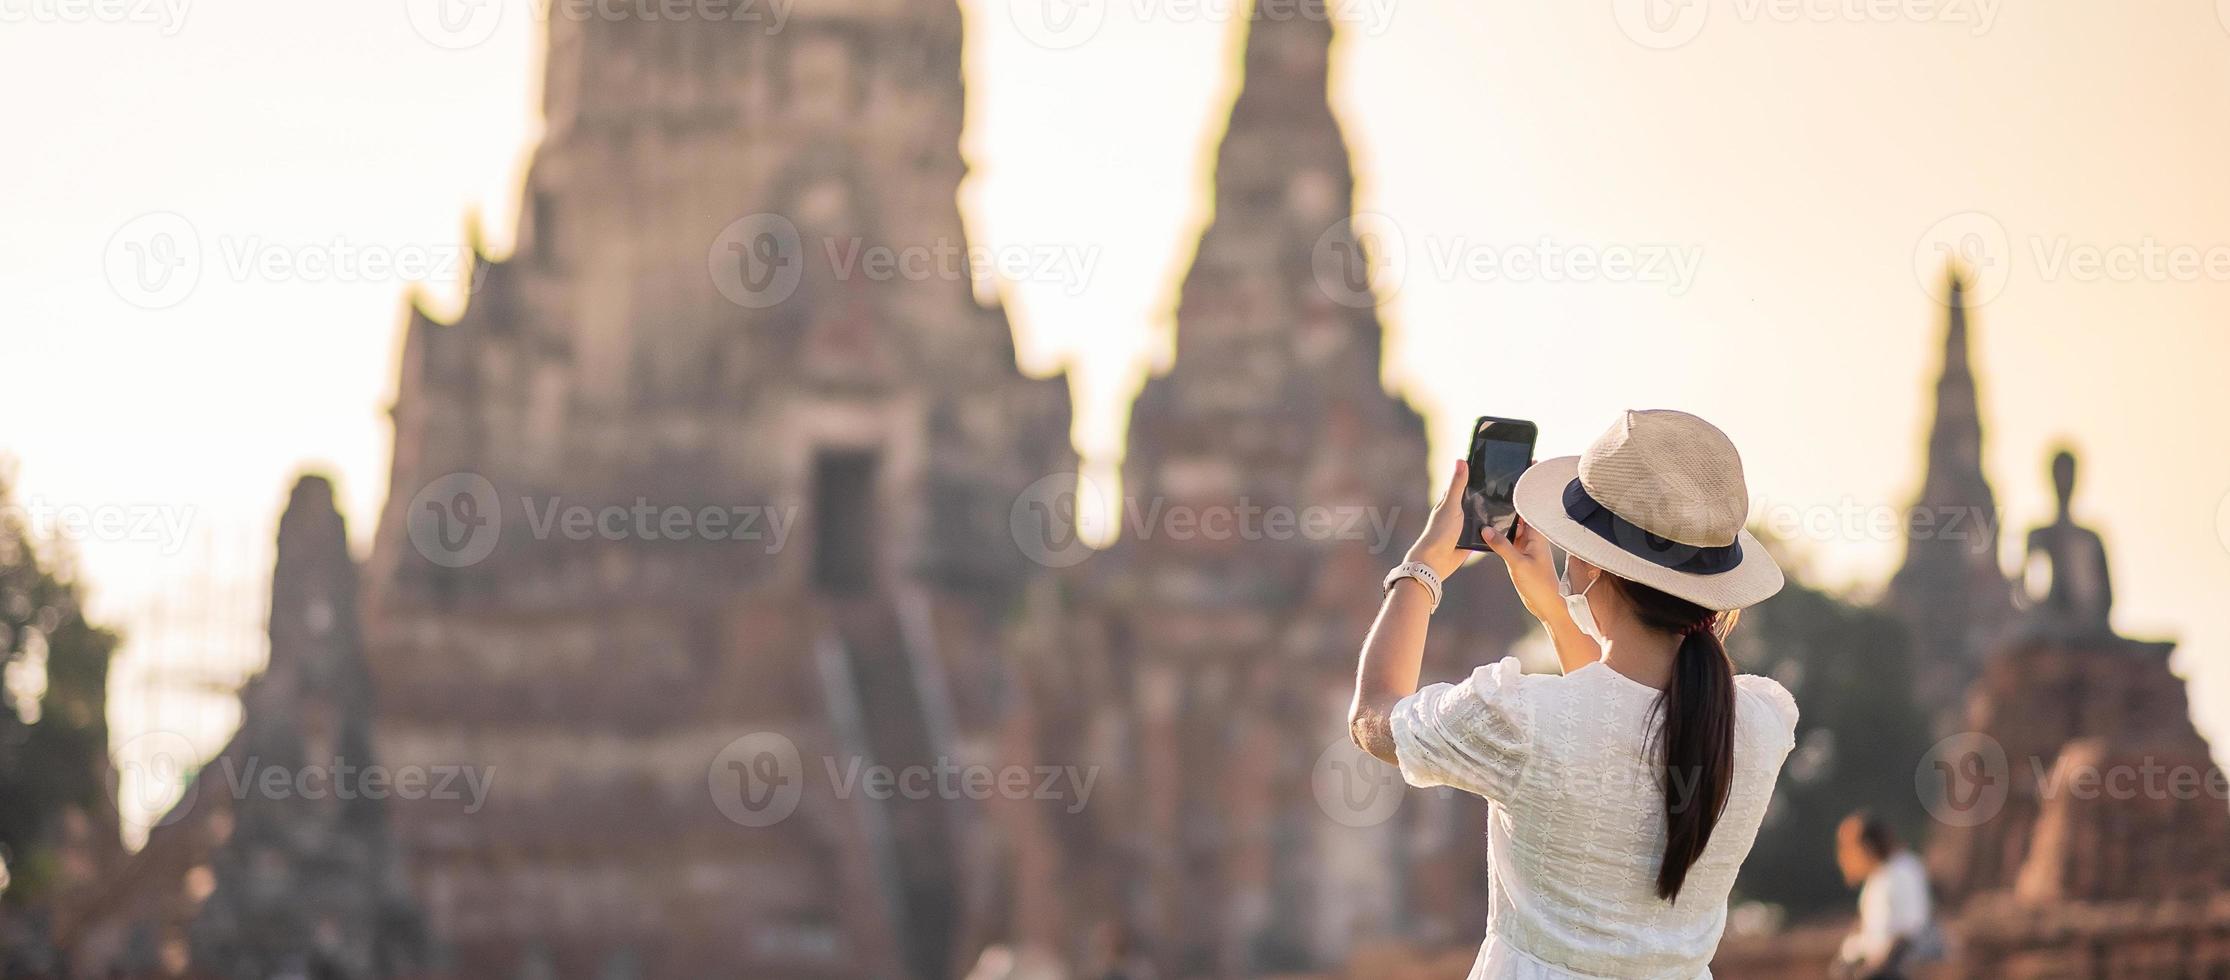 glückliche touristische frau, die chirurgische gesichtsmaske trägt und foto mit mobilem smartphone macht, schutz covid-19-pandemie während des besuchs im ayutthaya-tempel. neues Normal-, Sicherheitsreise- und Reisekonzept